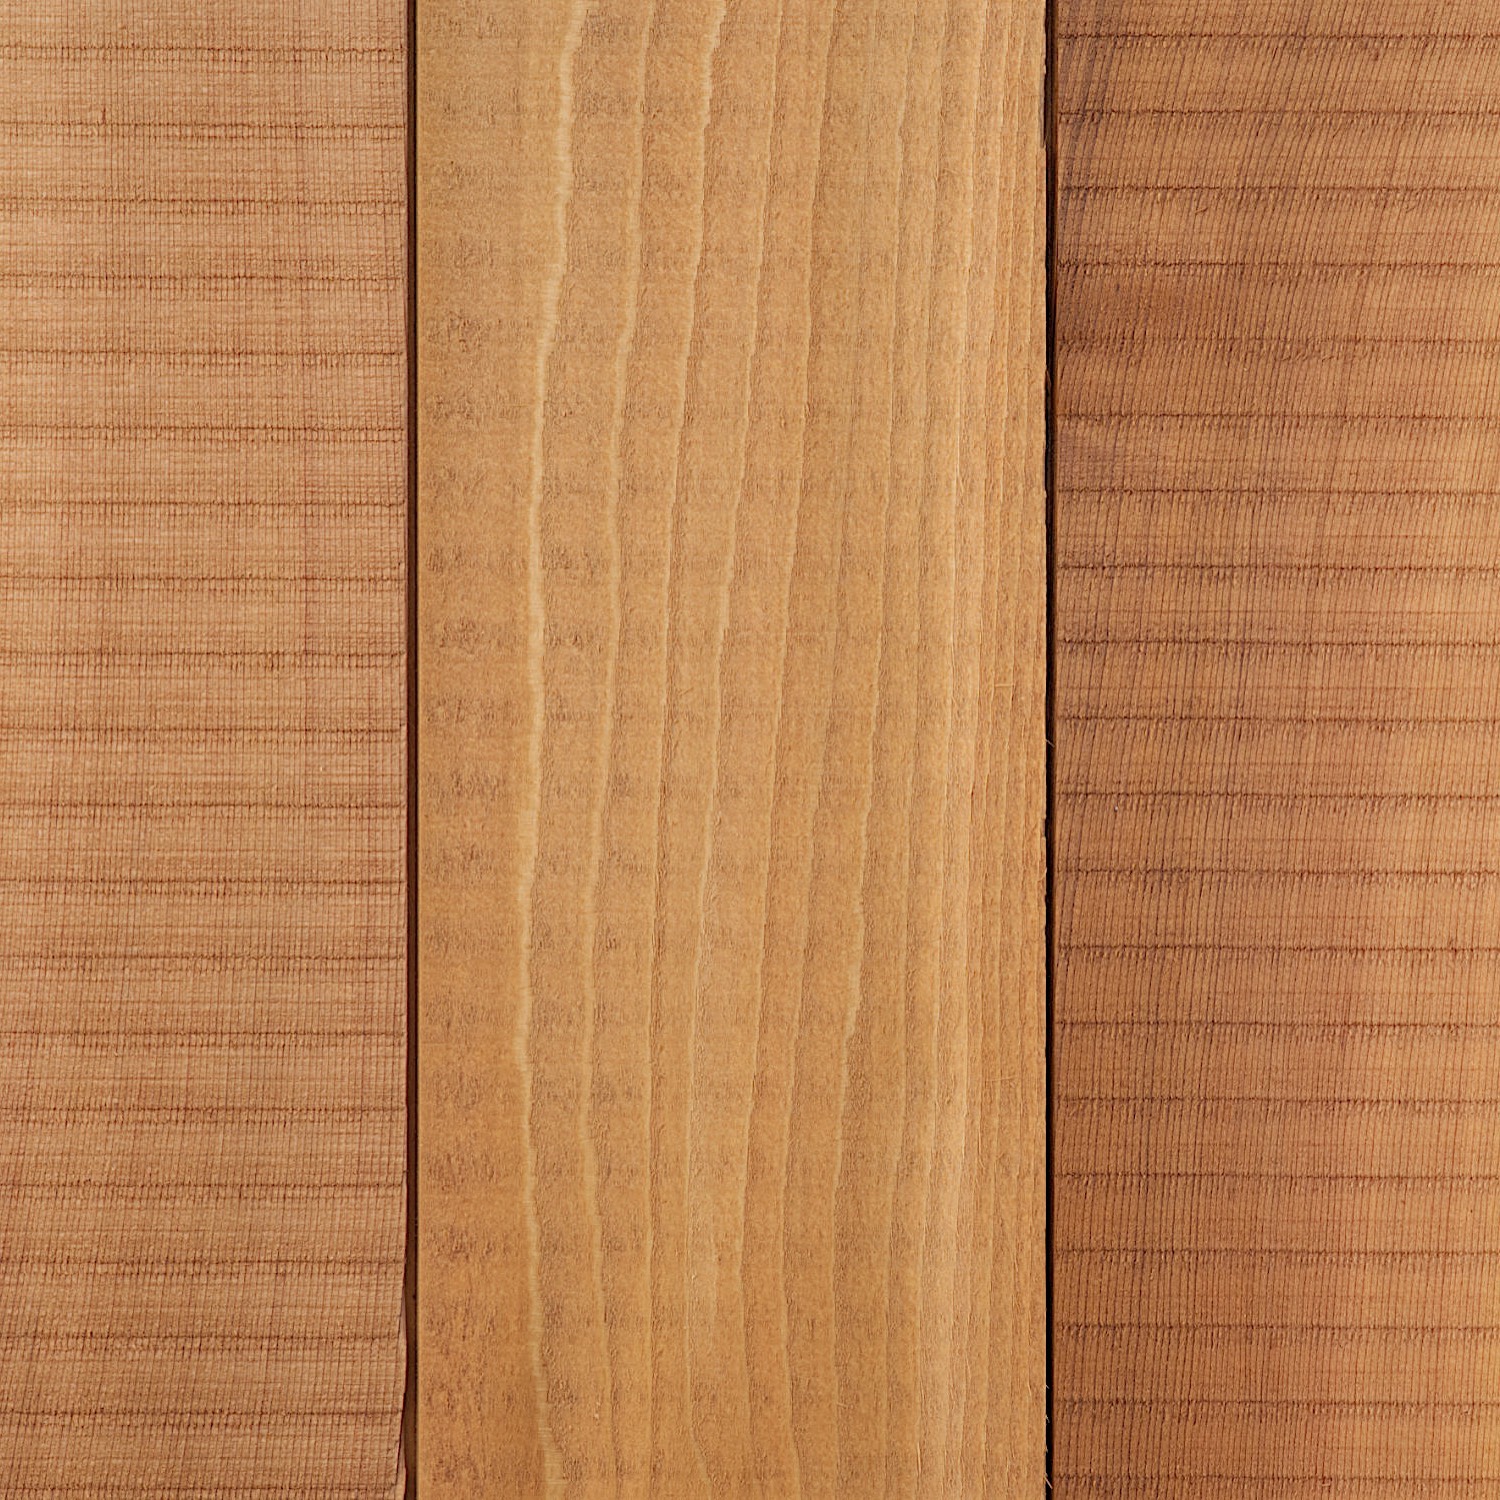 Cedar timber cladding